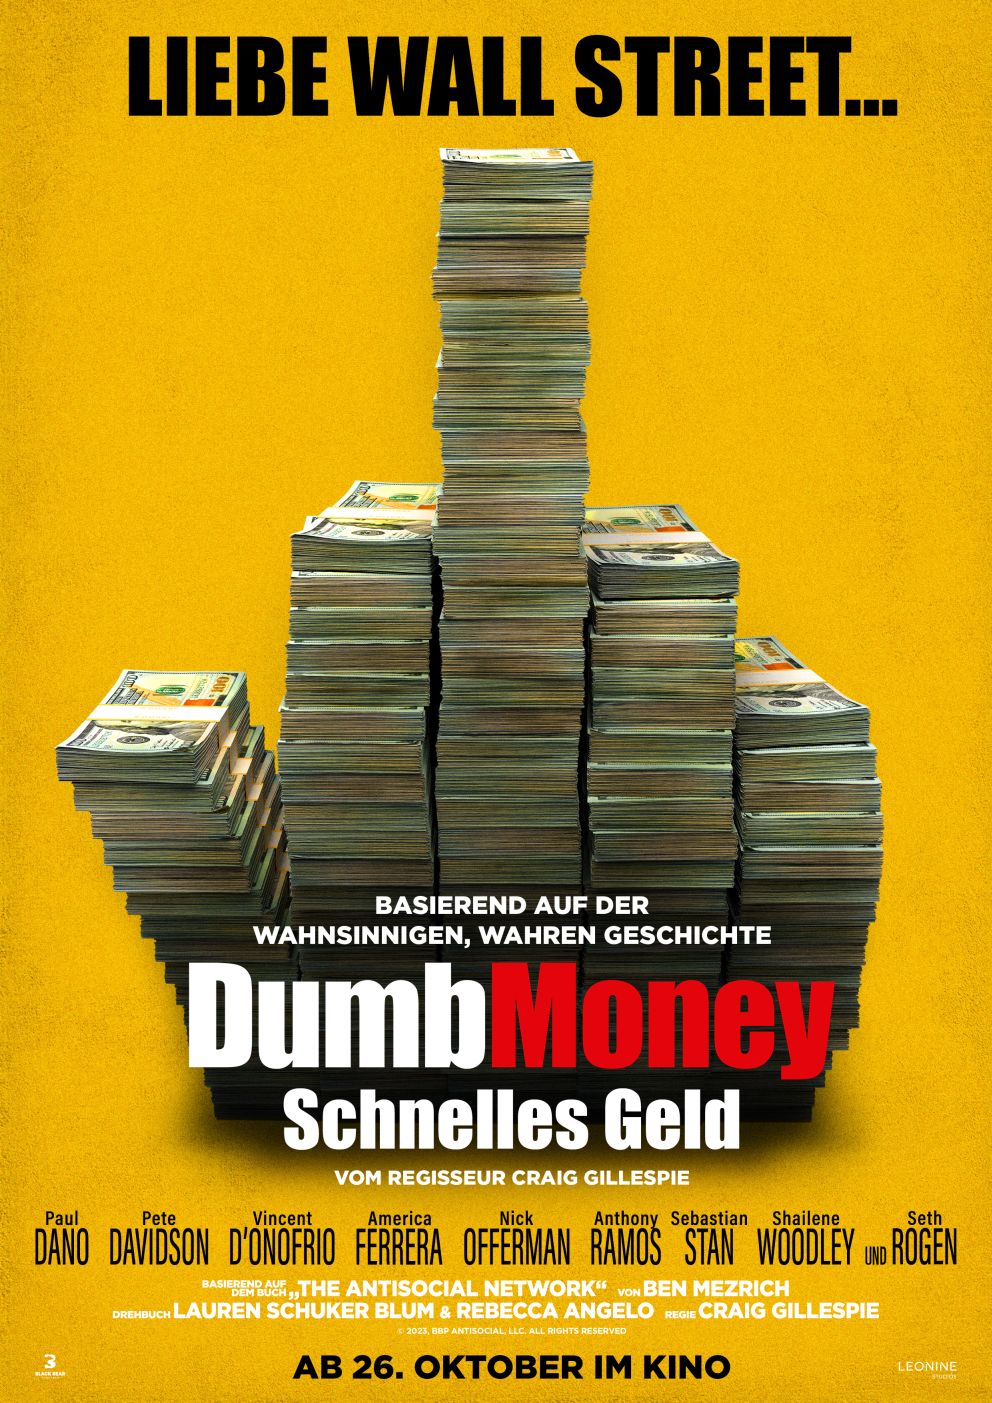 DUMB MONEY - SCHNELLES GELD - FILMPOSTER